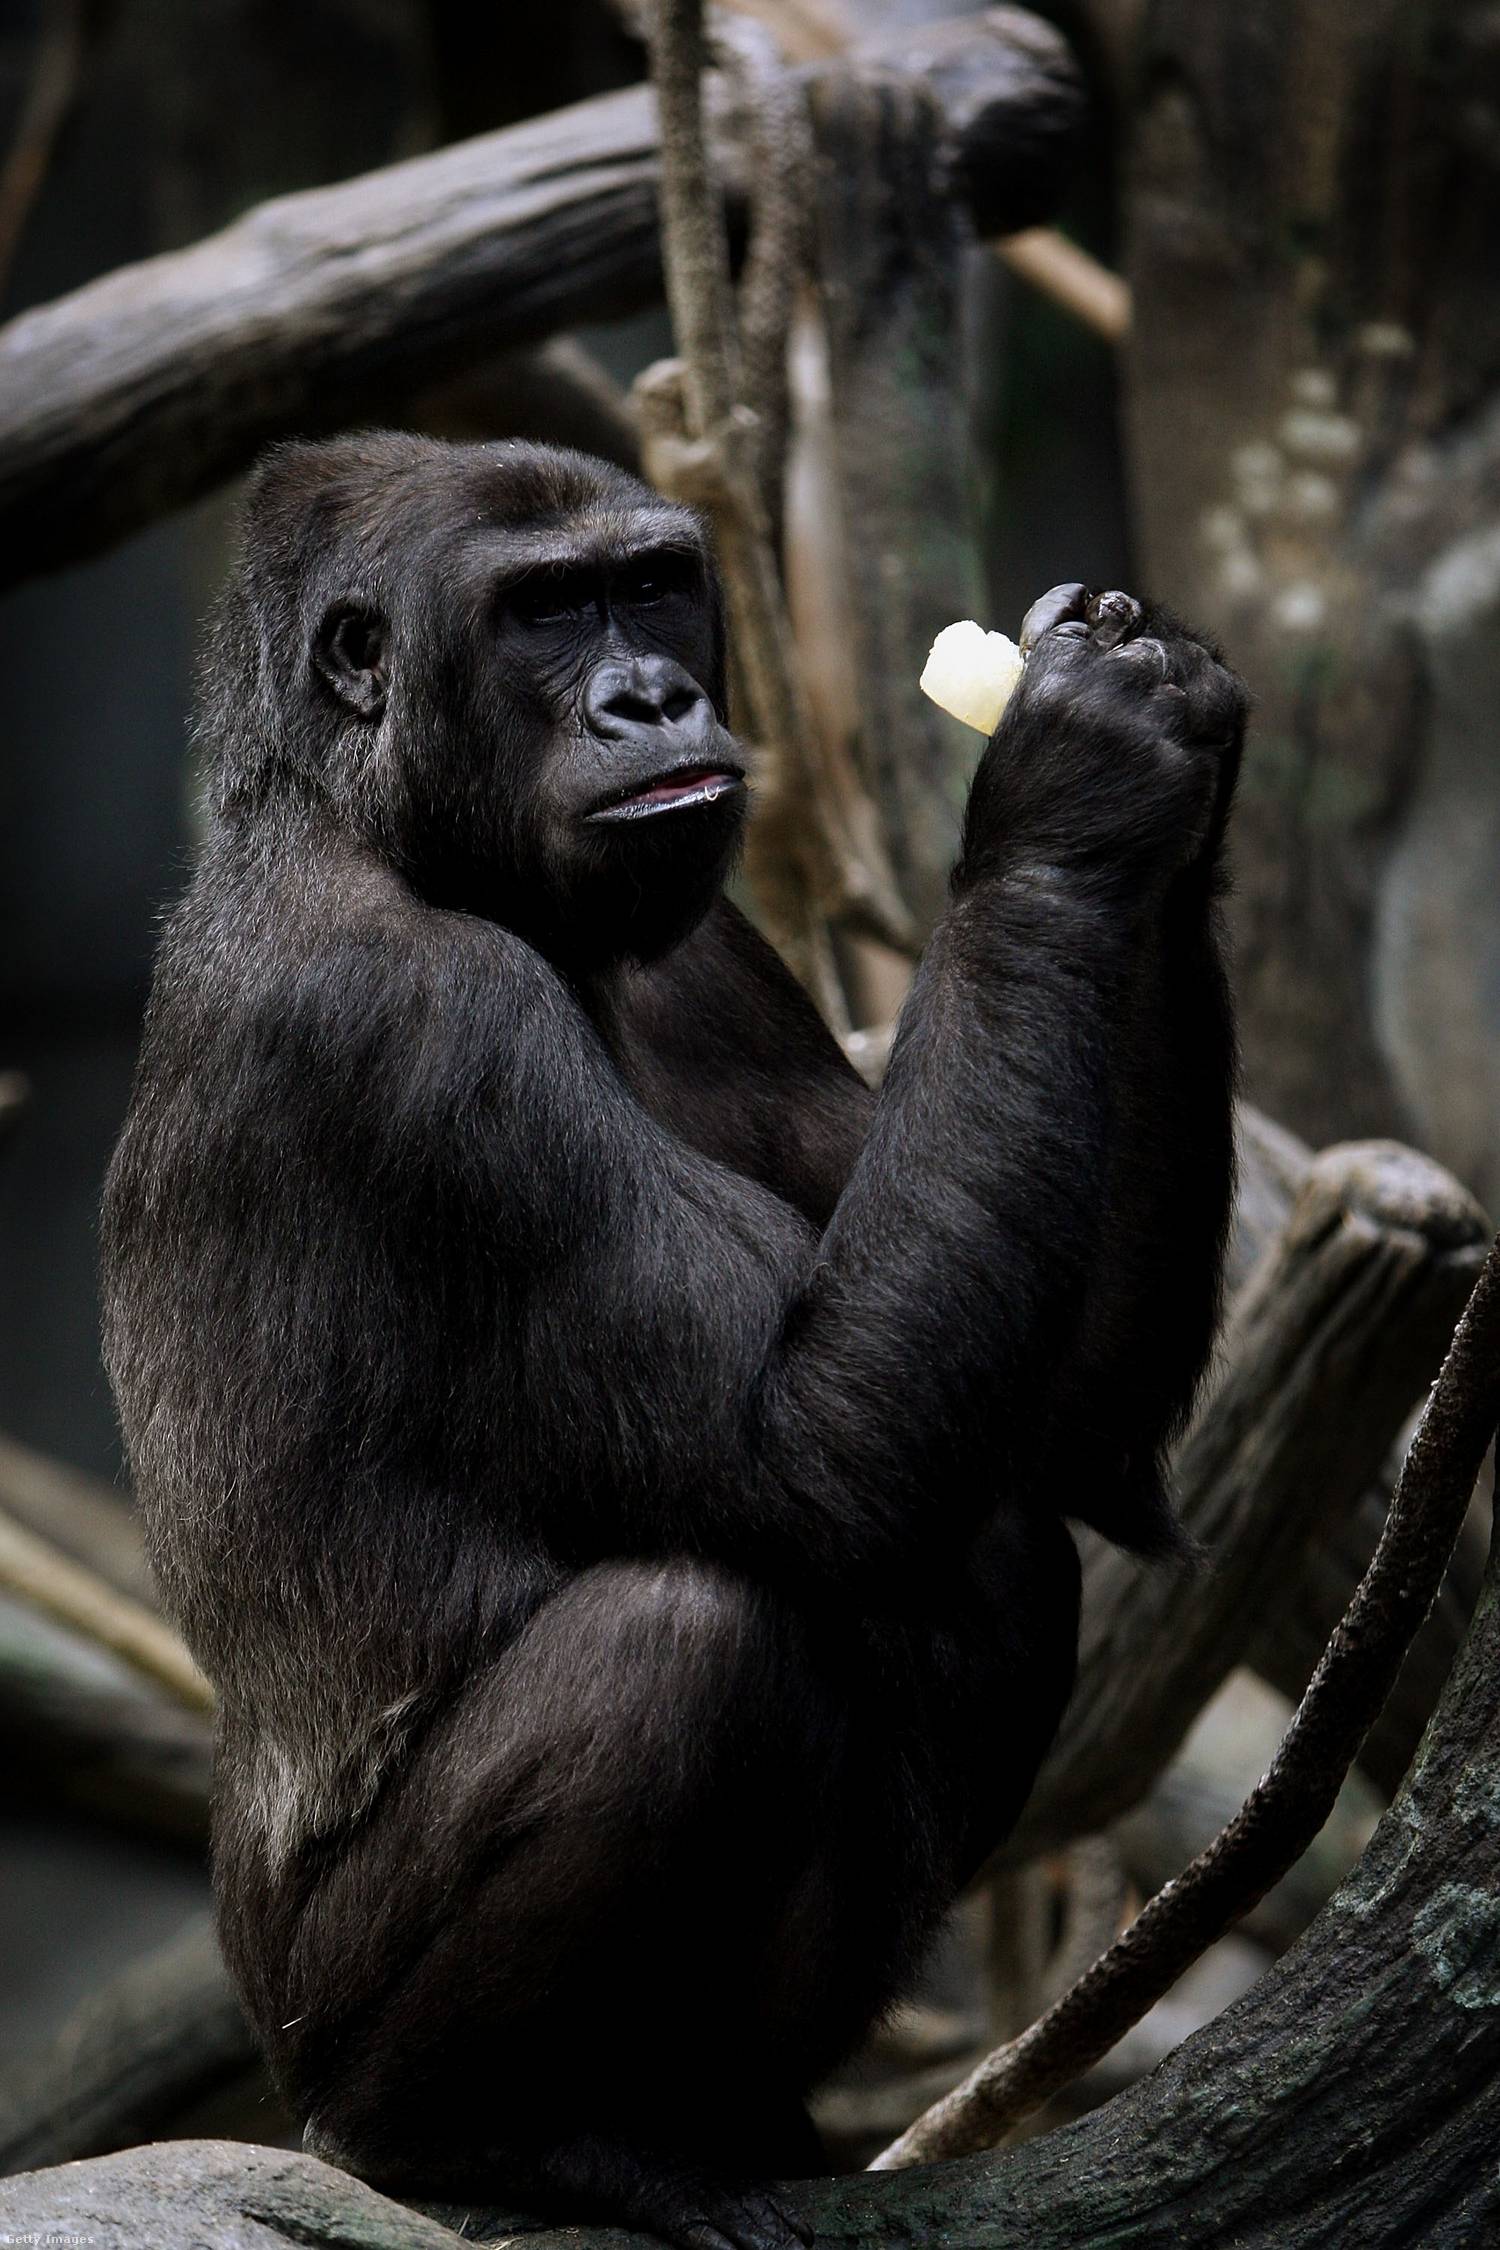 1996-ban a chicagói állatkertben egy hároméves kisfiú 18 méter mélyre zuhant egy gorillakifutóba. A sérült kisfiút Binti Jua, egy nőstény nyugati síkvidéki gorilla védte a többi gorillától, akik hírhedten területvédők. Átölelte a kisfiút, és elvitte a kifutó bejáratáig, ahol az állatkert alkalmazottai és az orvosi személyzet már várt rá.